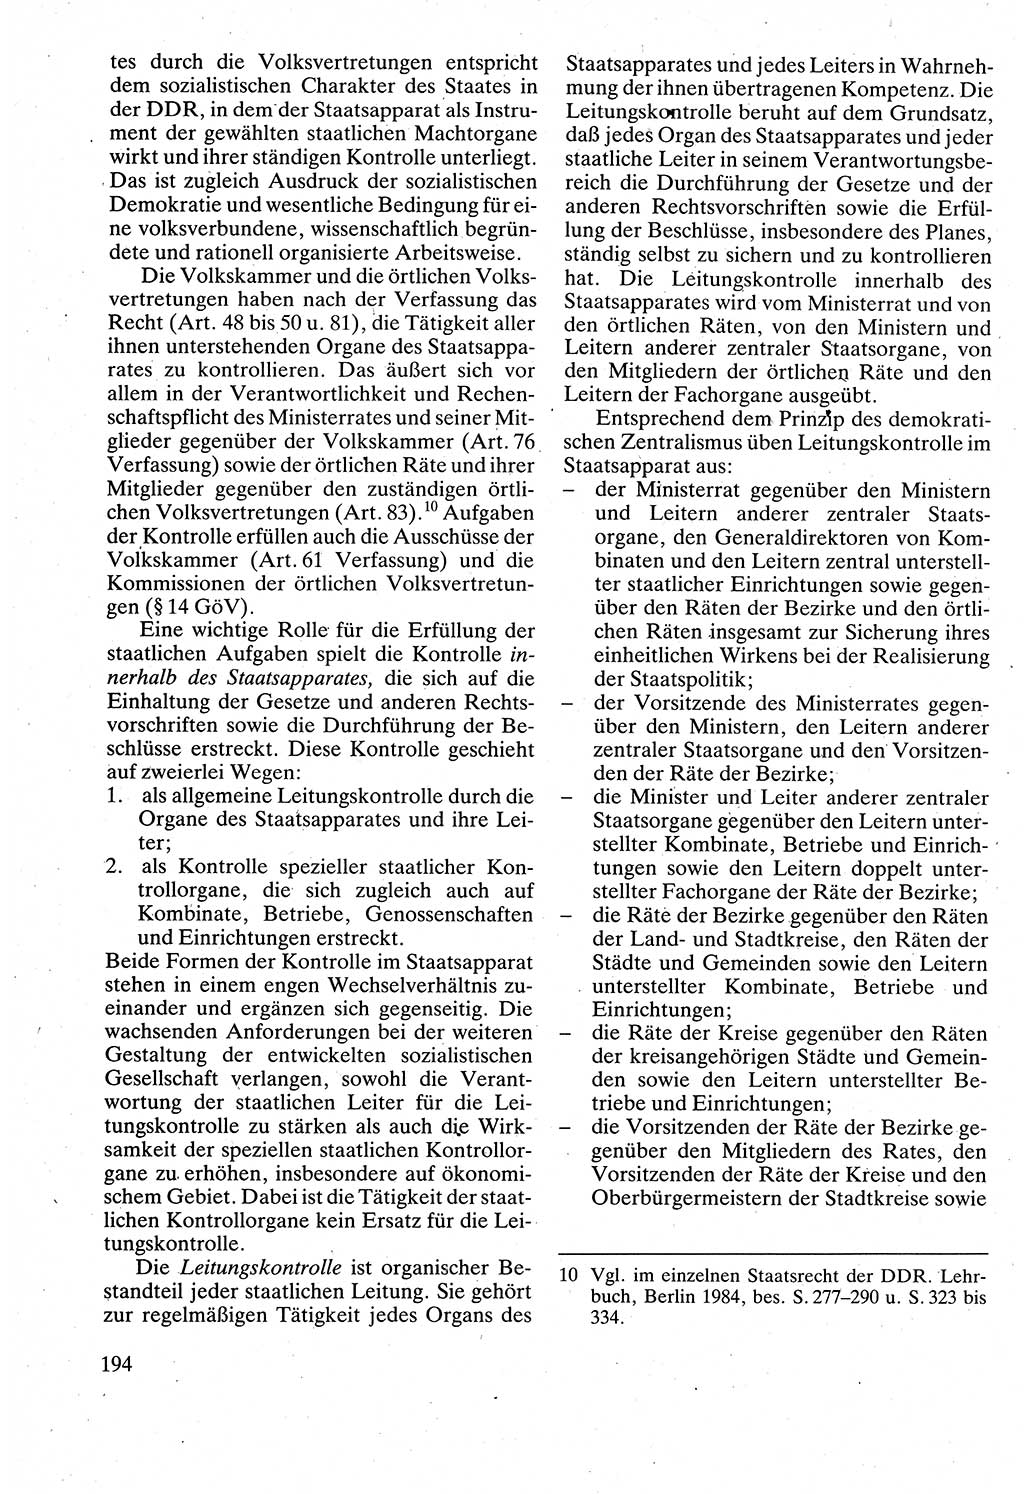 Verwaltungsrecht [Deutsche Demokratische Republik (DDR)], Lehrbuch 1988, Seite 194 (Verw.-R. DDR Lb. 1988, S. 194)